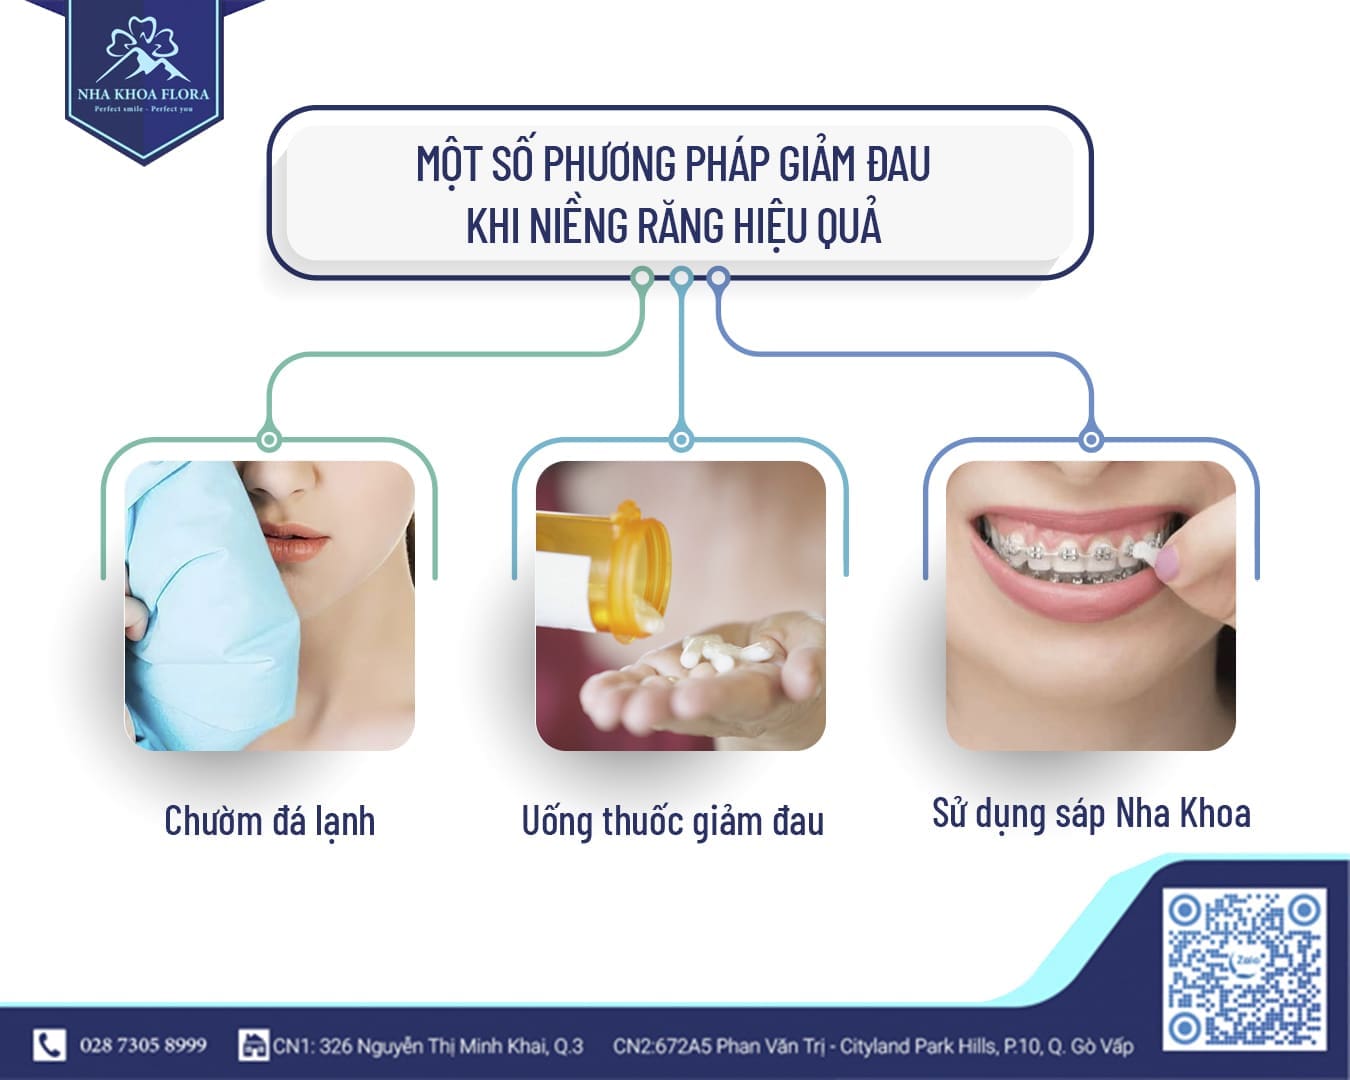 Phương pháp giảm đau khi niềng răng mắc cài